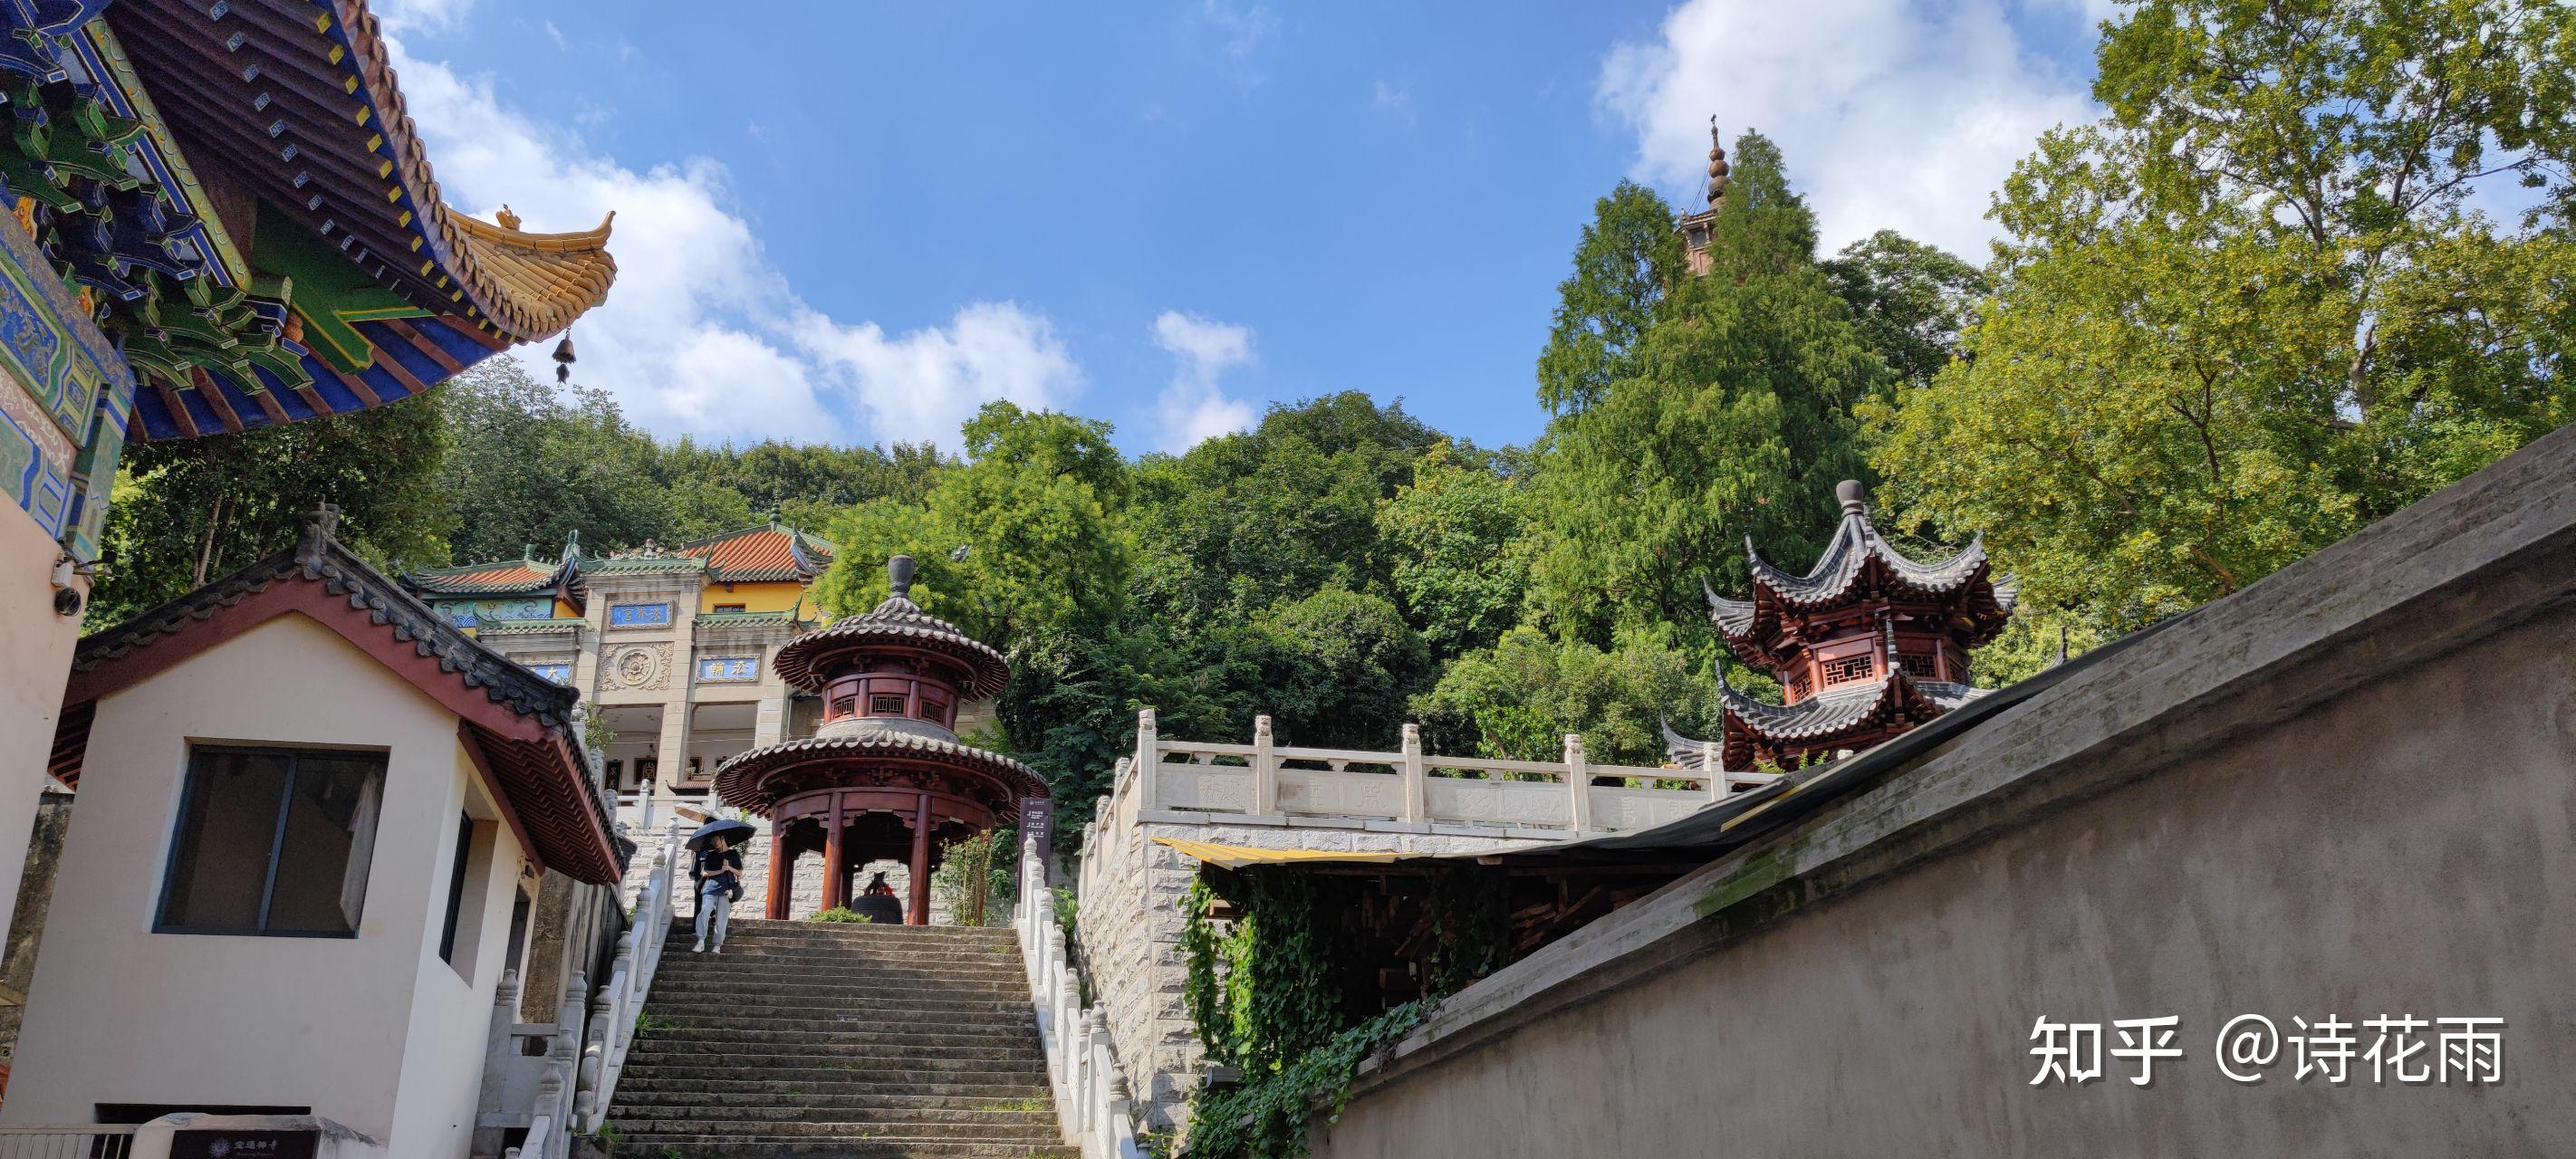 武汉宝通寺1600多年的历史,是武汉唯一一家皇家寺院.